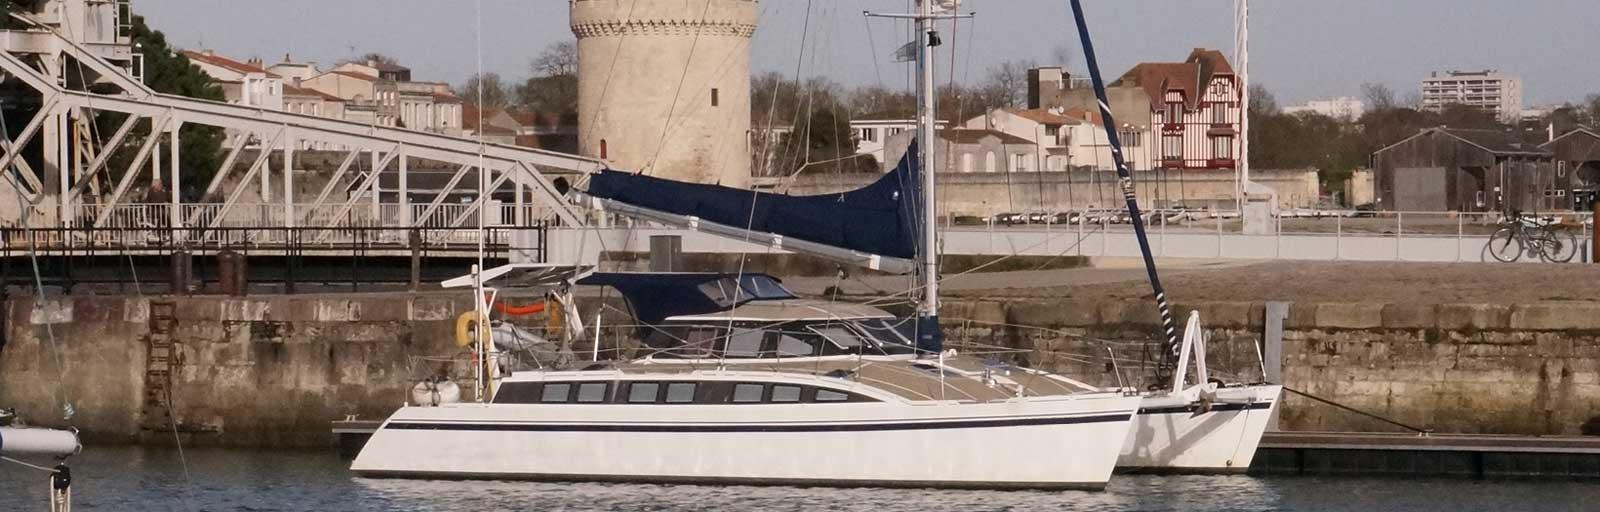 Cat Flotteur 45 - AYC Yachtbrokers